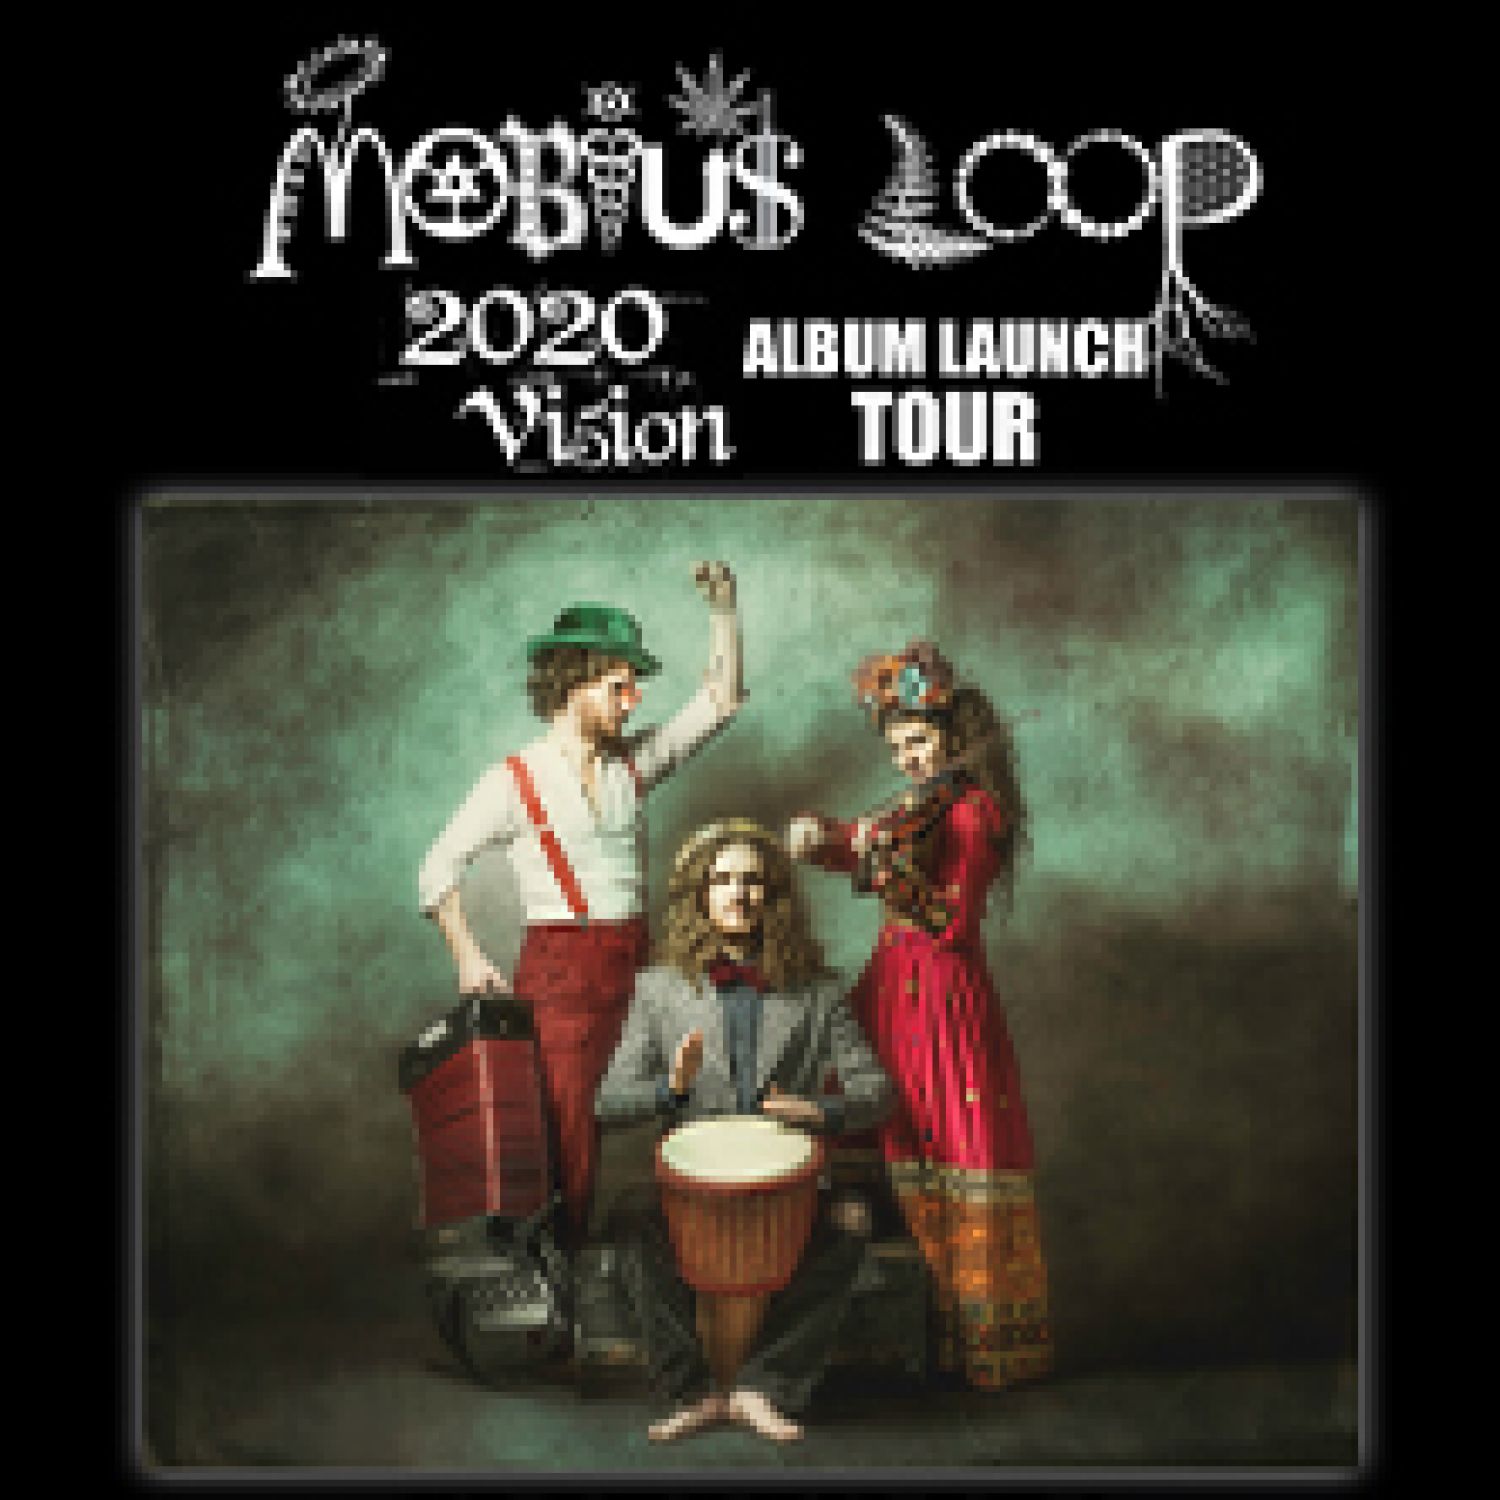 MOBIUS LOOP - ALBUM LAUNCH TOUR